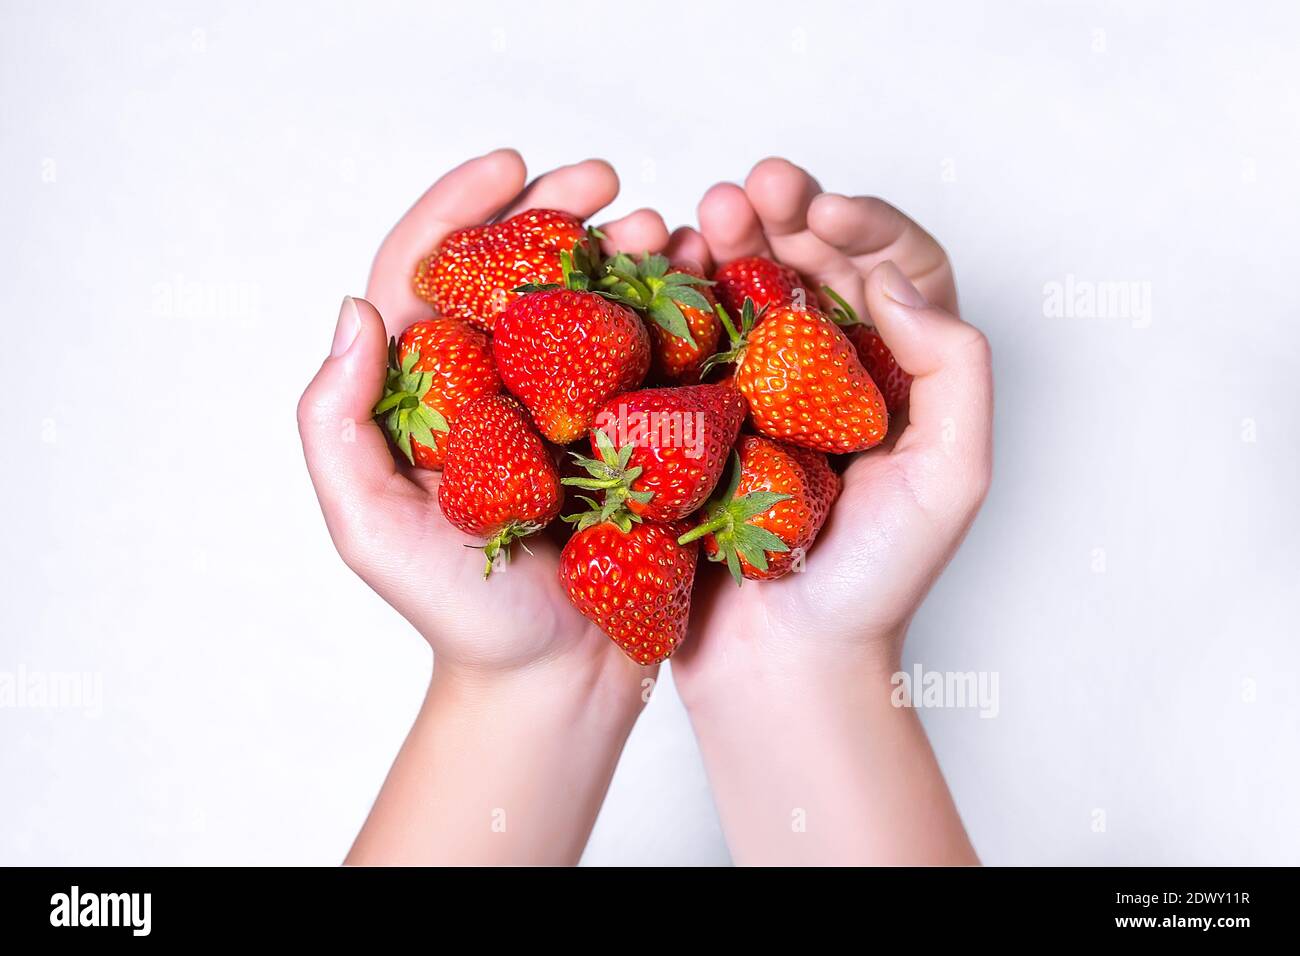 Une femme tient une poignée de fraises fraîches mûres. Gros plan sur les mains avec les fraises. Banque D'Images